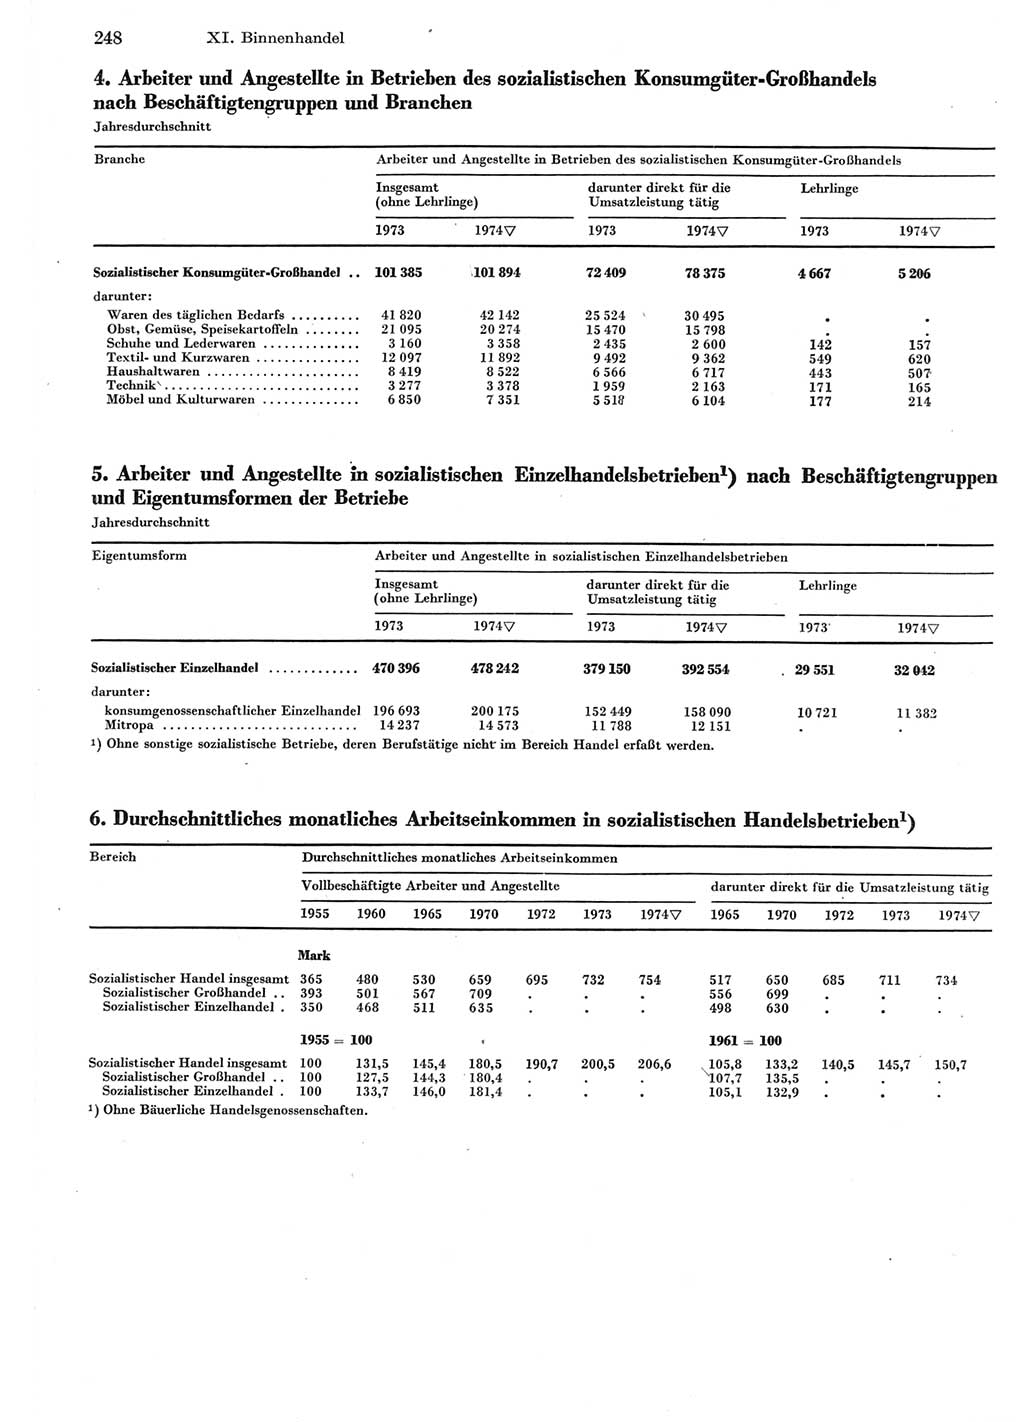 Statistisches Jahrbuch der Deutschen Demokratischen Republik (DDR) 1975, Seite 248 (Stat. Jb. DDR 1975, S. 248)